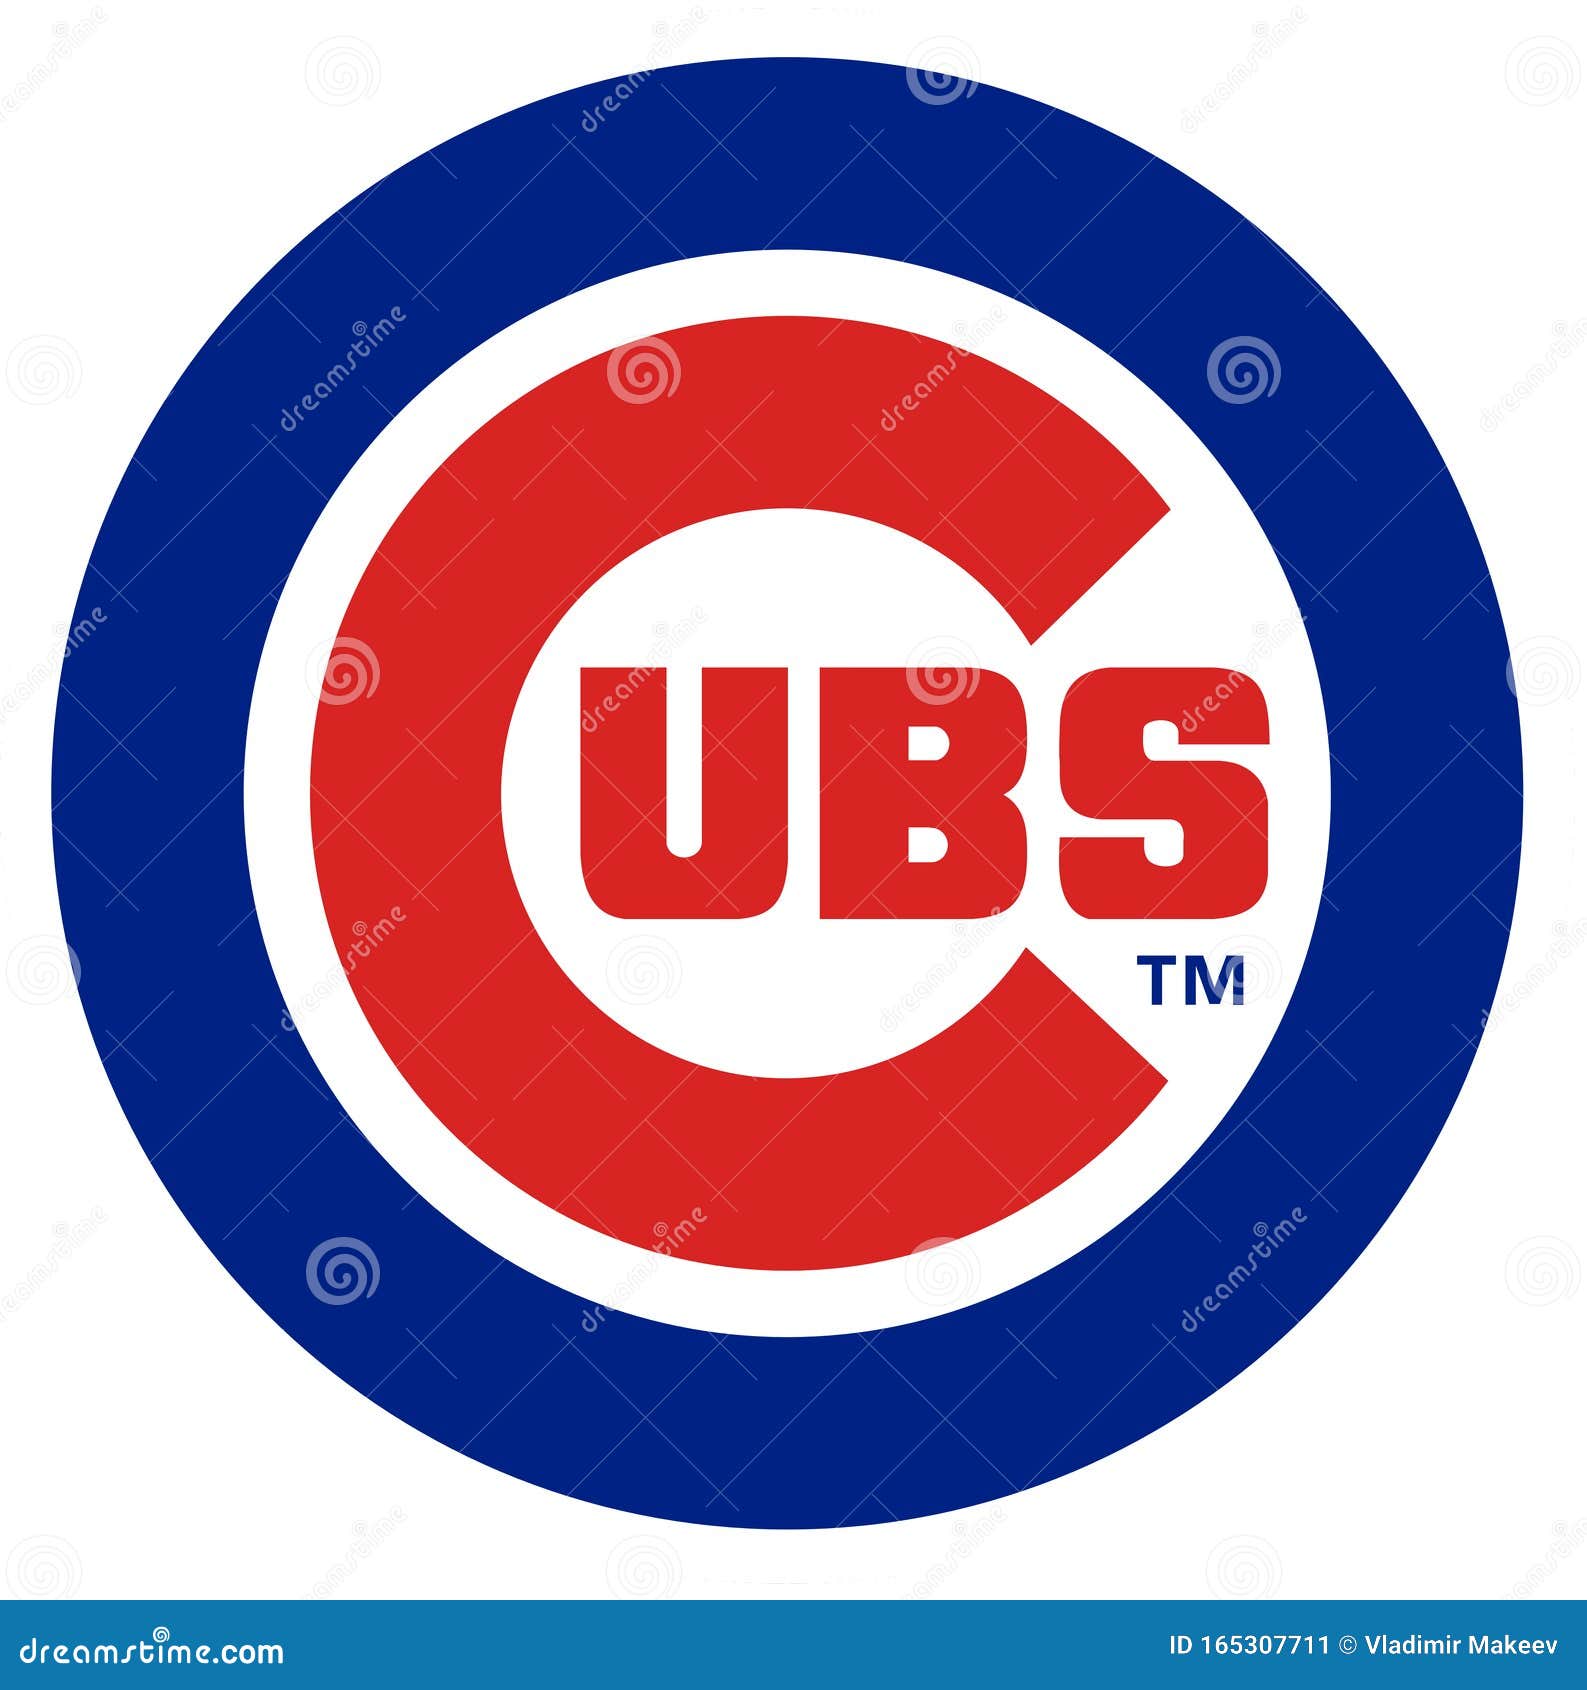 Cubs Logo Stock Illustrations – 131 Cubs Logo Stock Illustrations, Vectors  & Clipart - Dreamstime